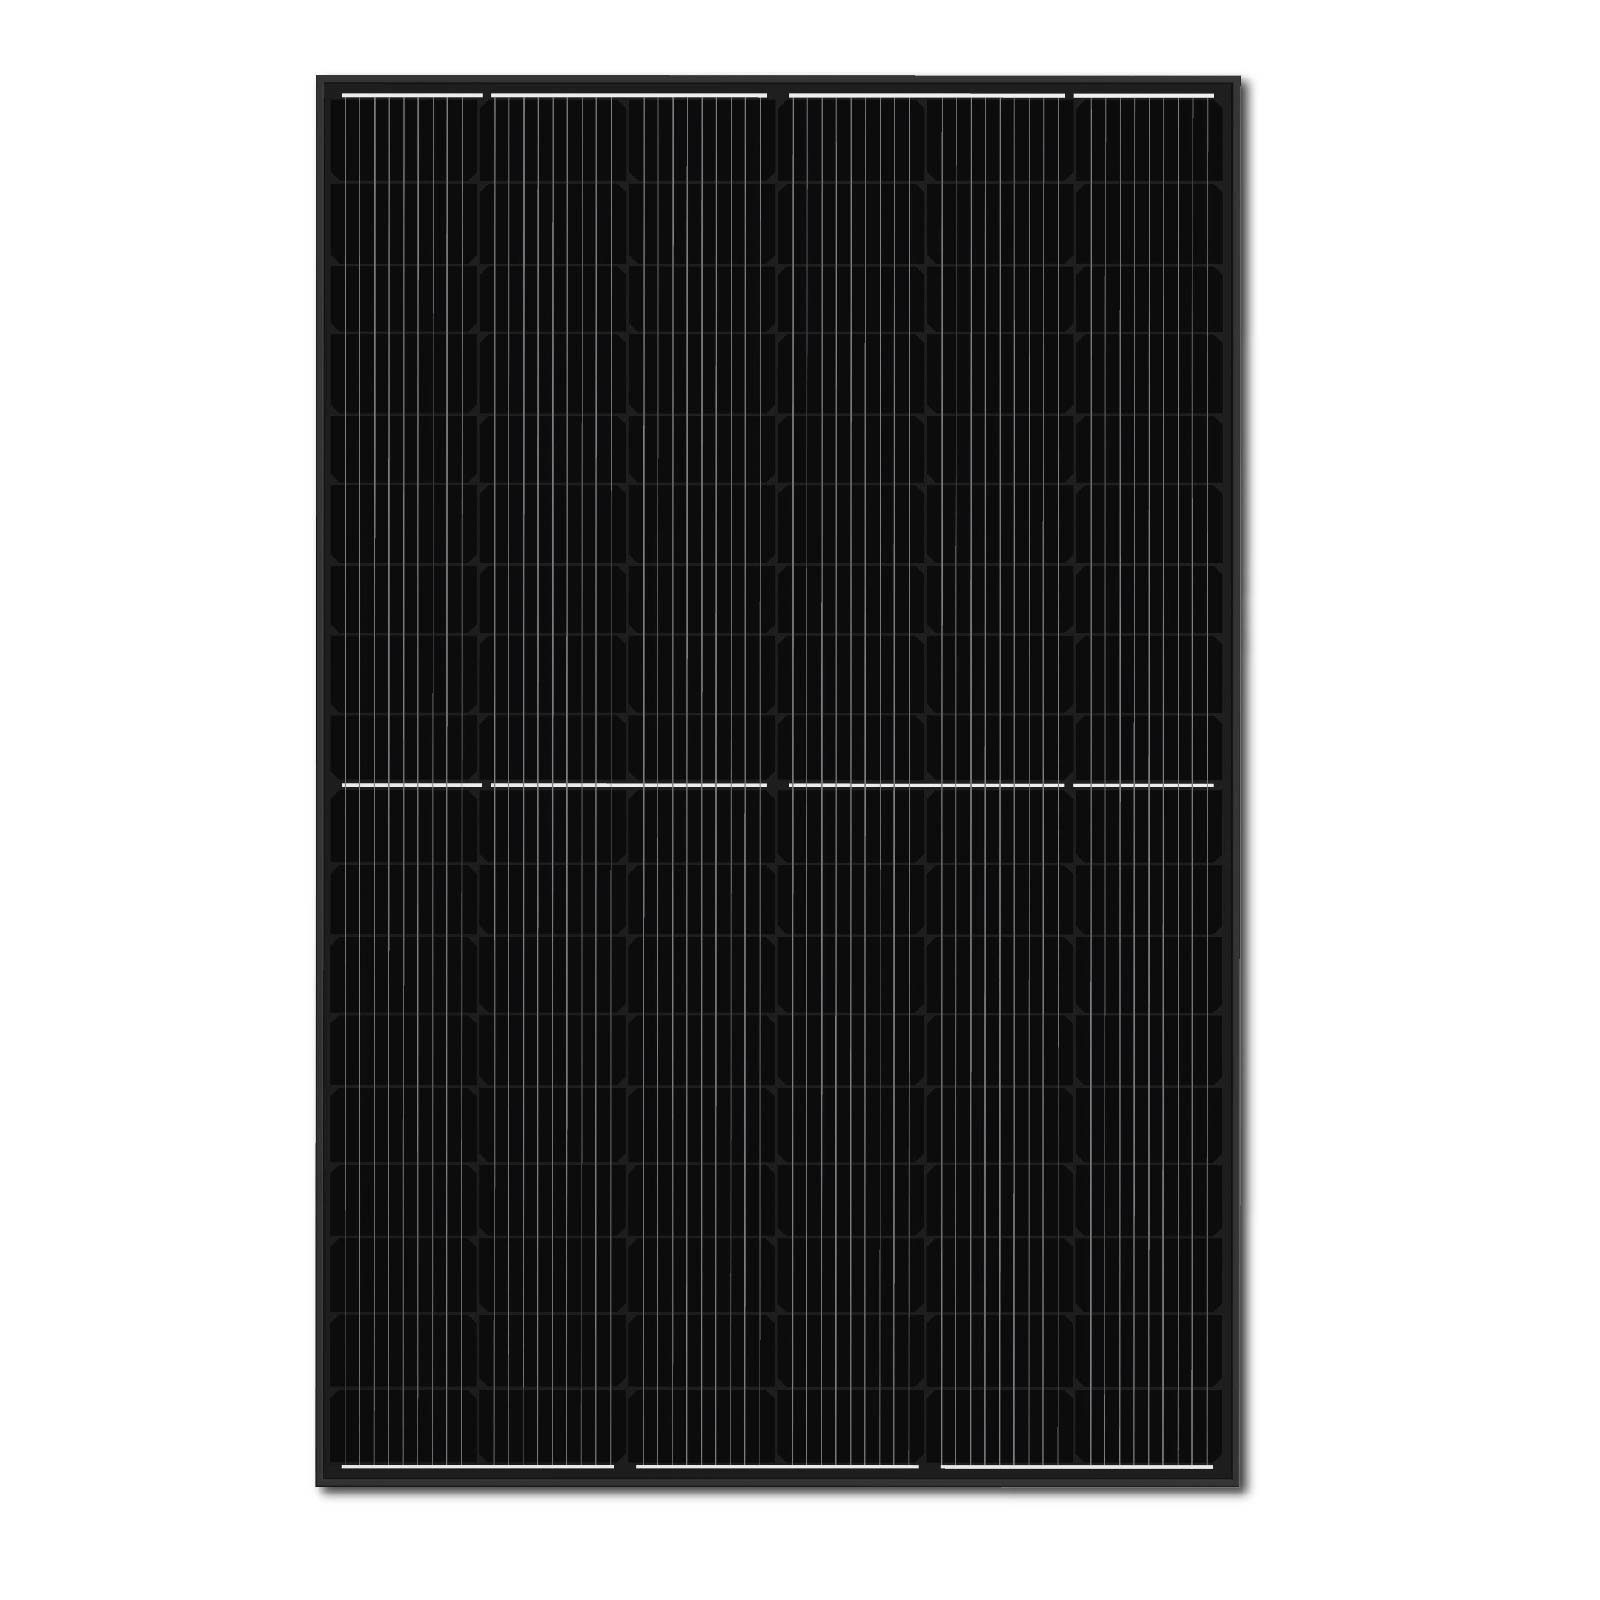 Wasserdichtigkeitsklasse monokristalline 400W Campergold Schwarz Solarmodul Hieff (Solarpanel) Photovoltaik IP68, Schwarz 2x Solarmodul, Sunpro